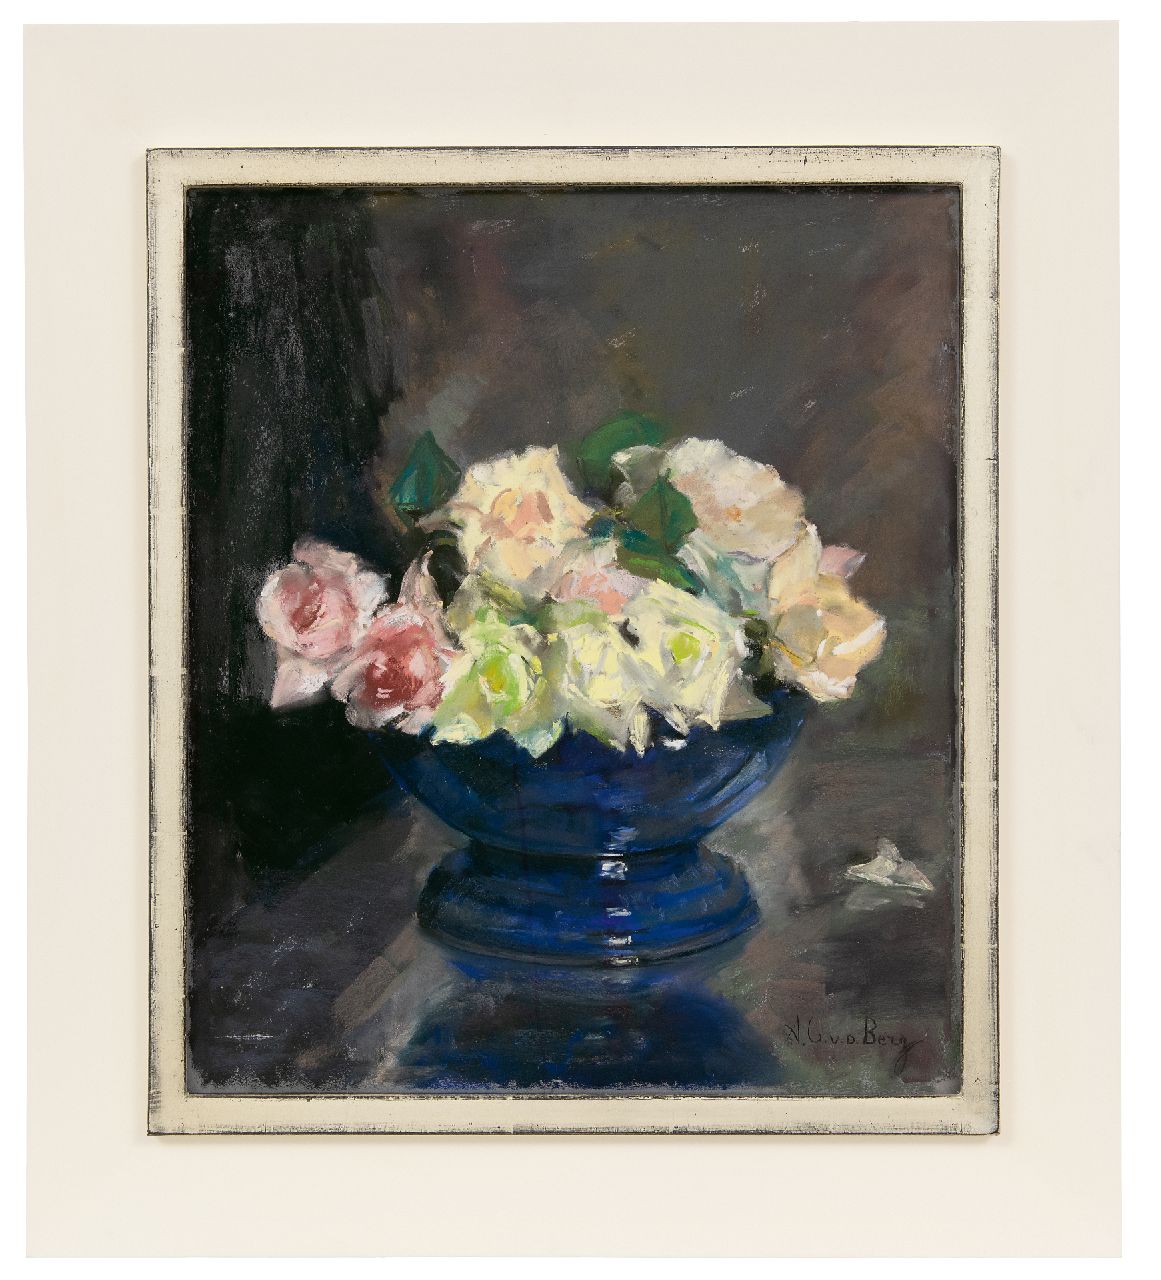 Berg A.C. van den | Anna Carolina 'Ans' van den Berg | Aquarellen en tekeningen te koop aangeboden | Blauw schaaltje met rozen, pastel op papier 43,0 x 37,0 cm, gesigneerd rechtsonder